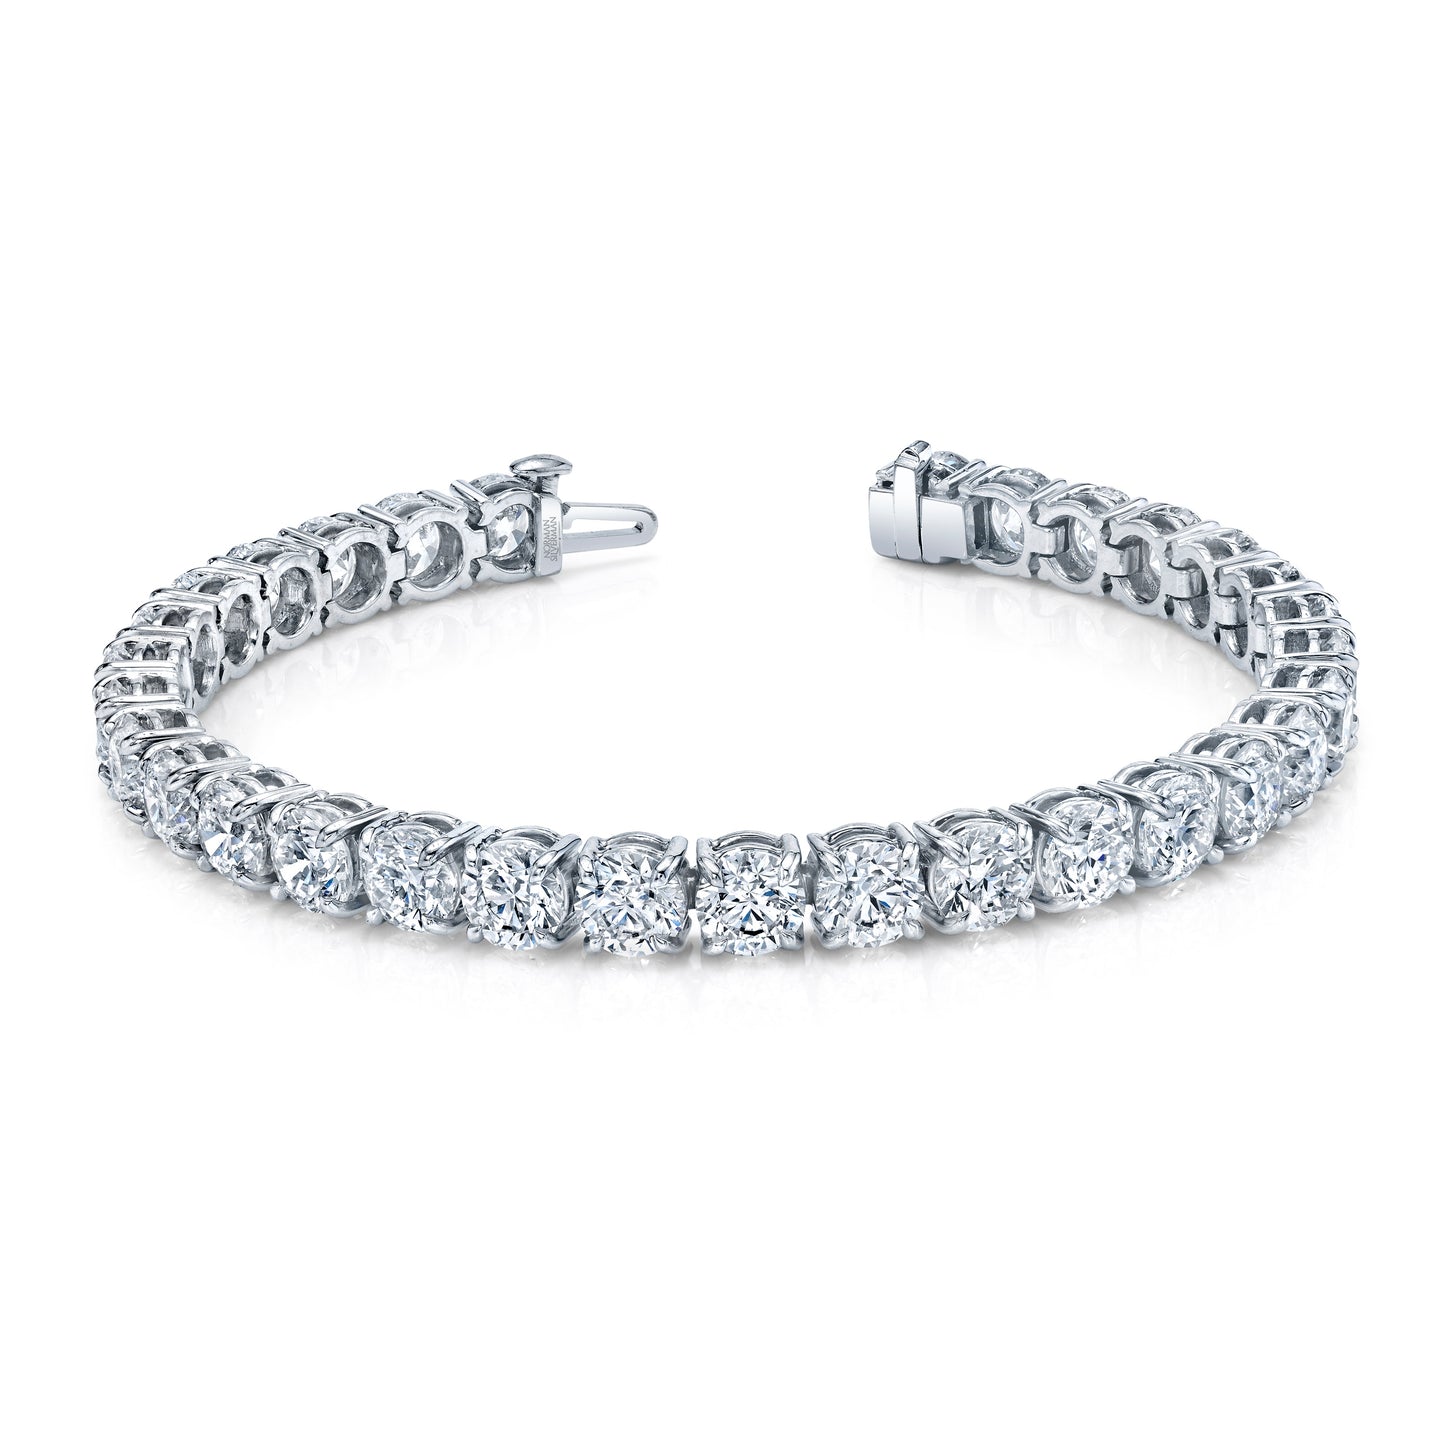 Signature Tennis Bracelet with Round Brilliant Diamonds